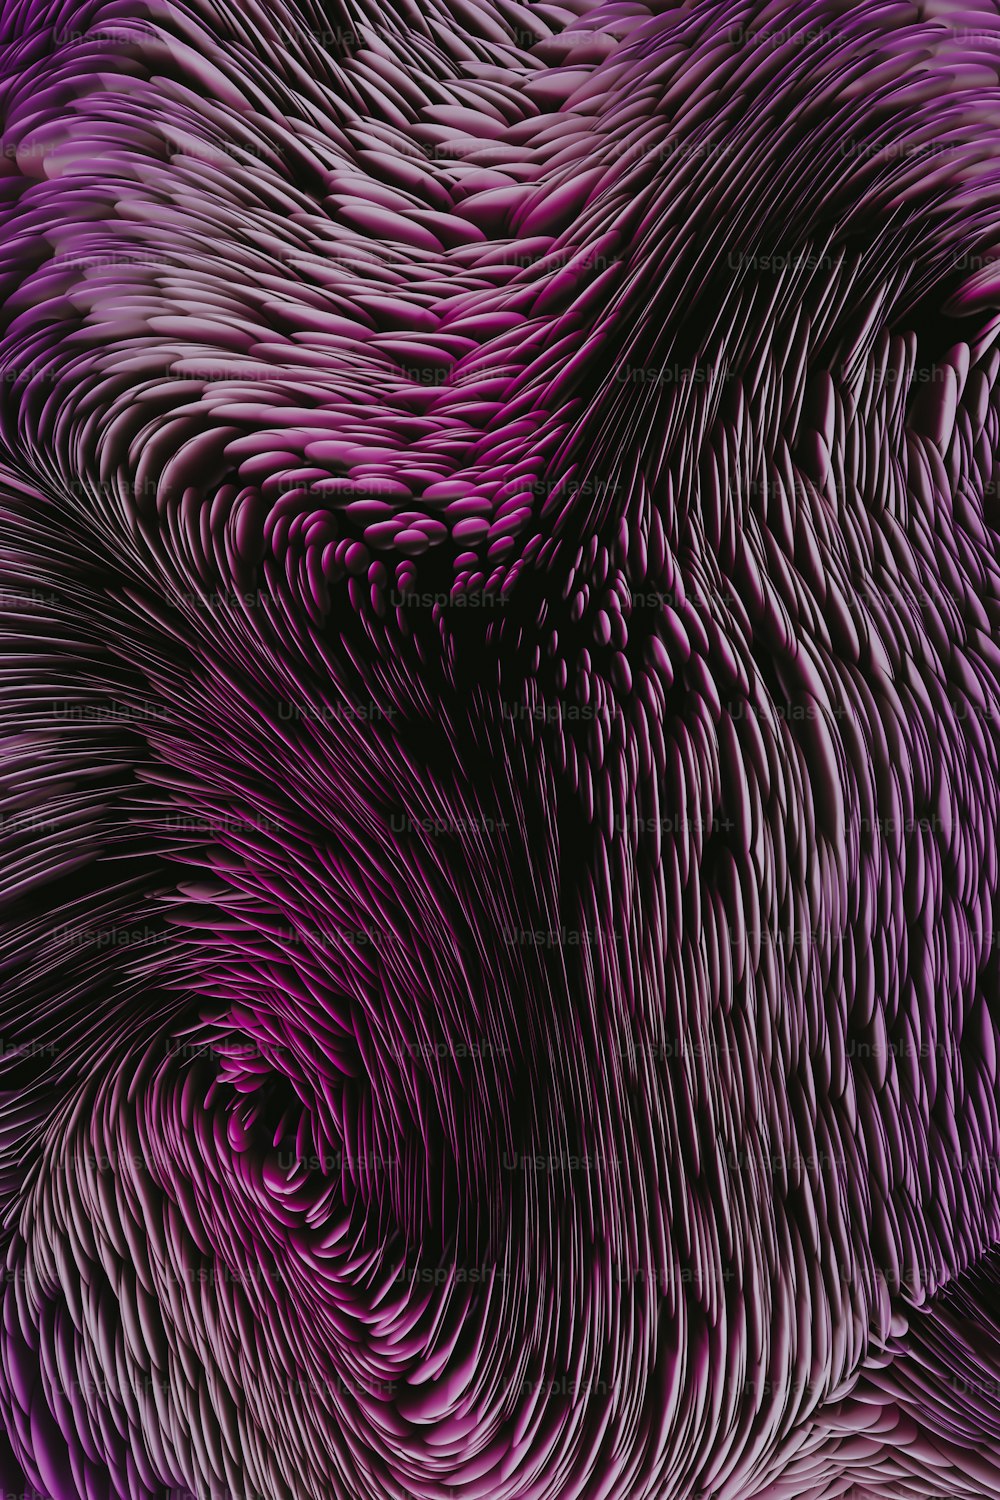 Gros plan d’une plume violette et noire